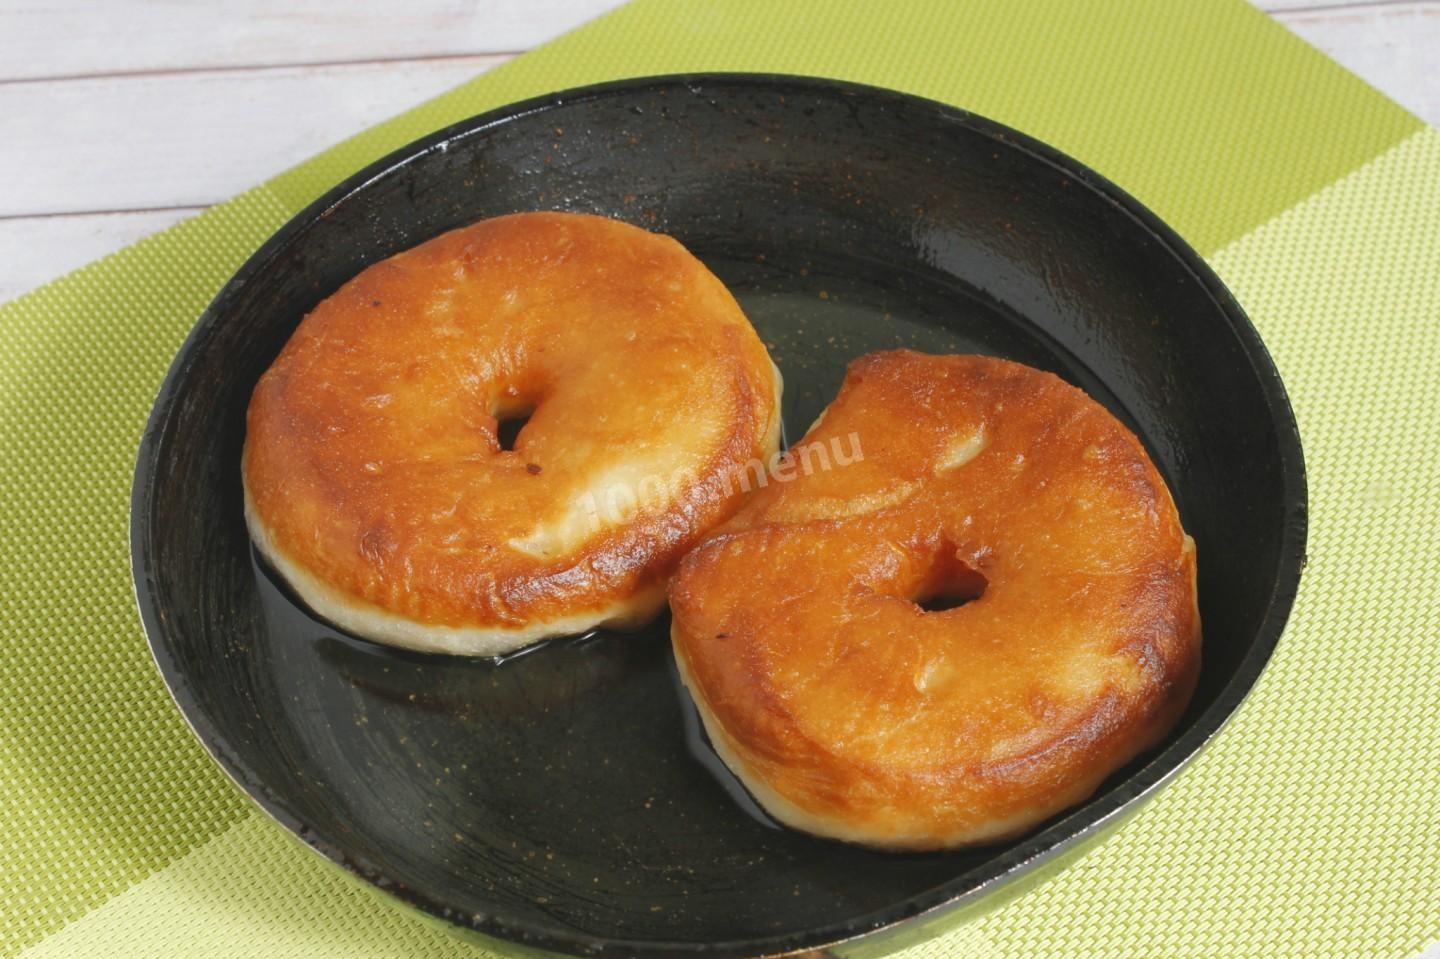 Яблочные пончики рецепт с фото пошагово на сковороде